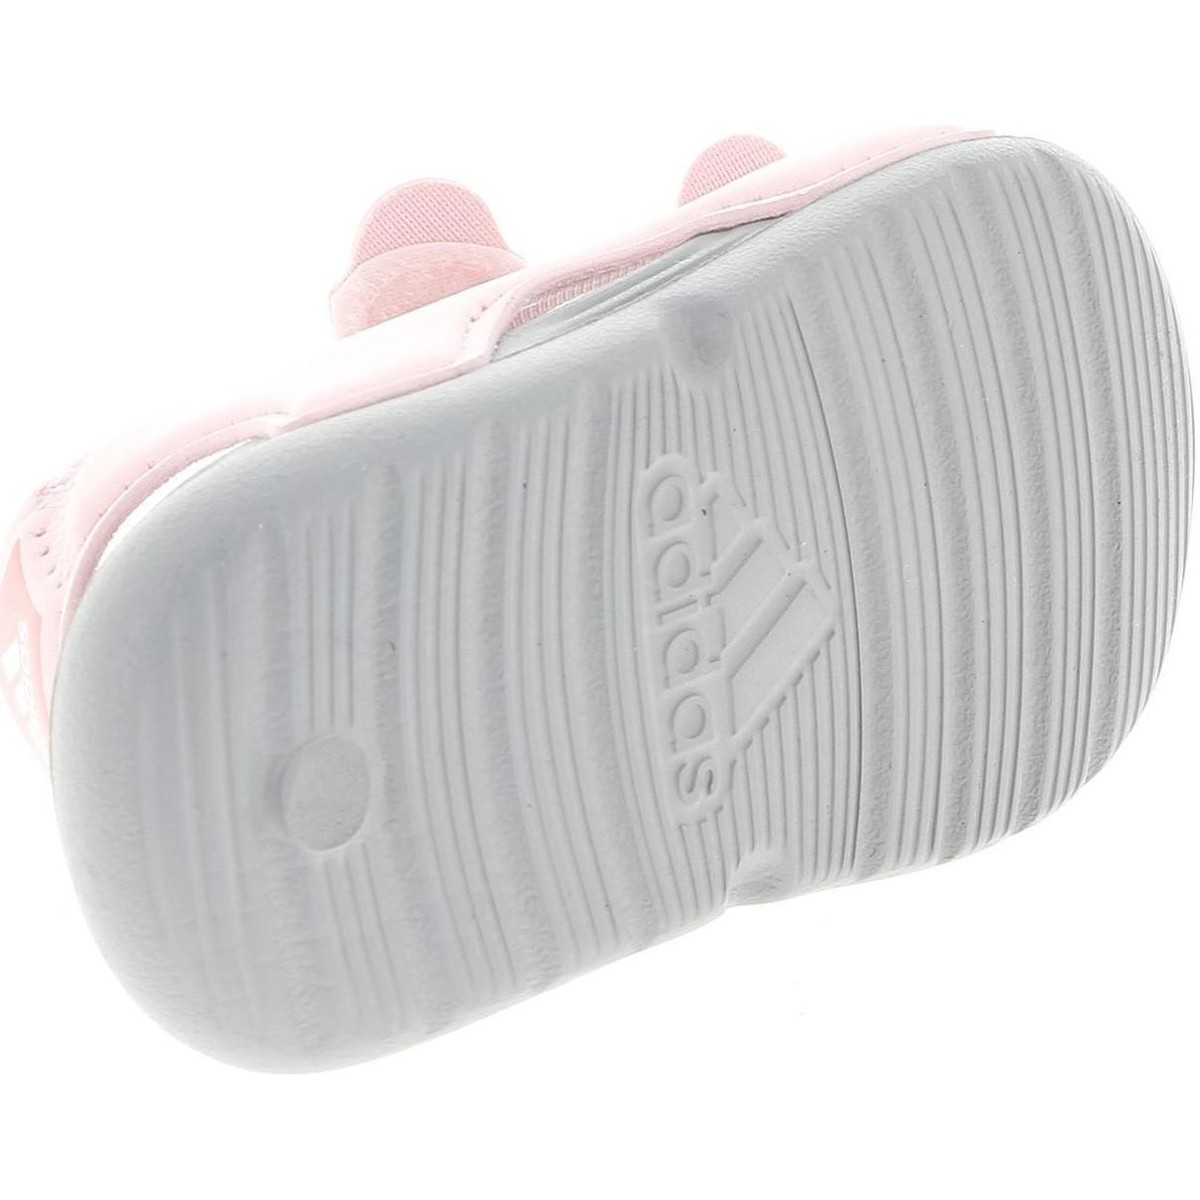 adidas Originals Rose Swim sandal i rose zBjhU5e9